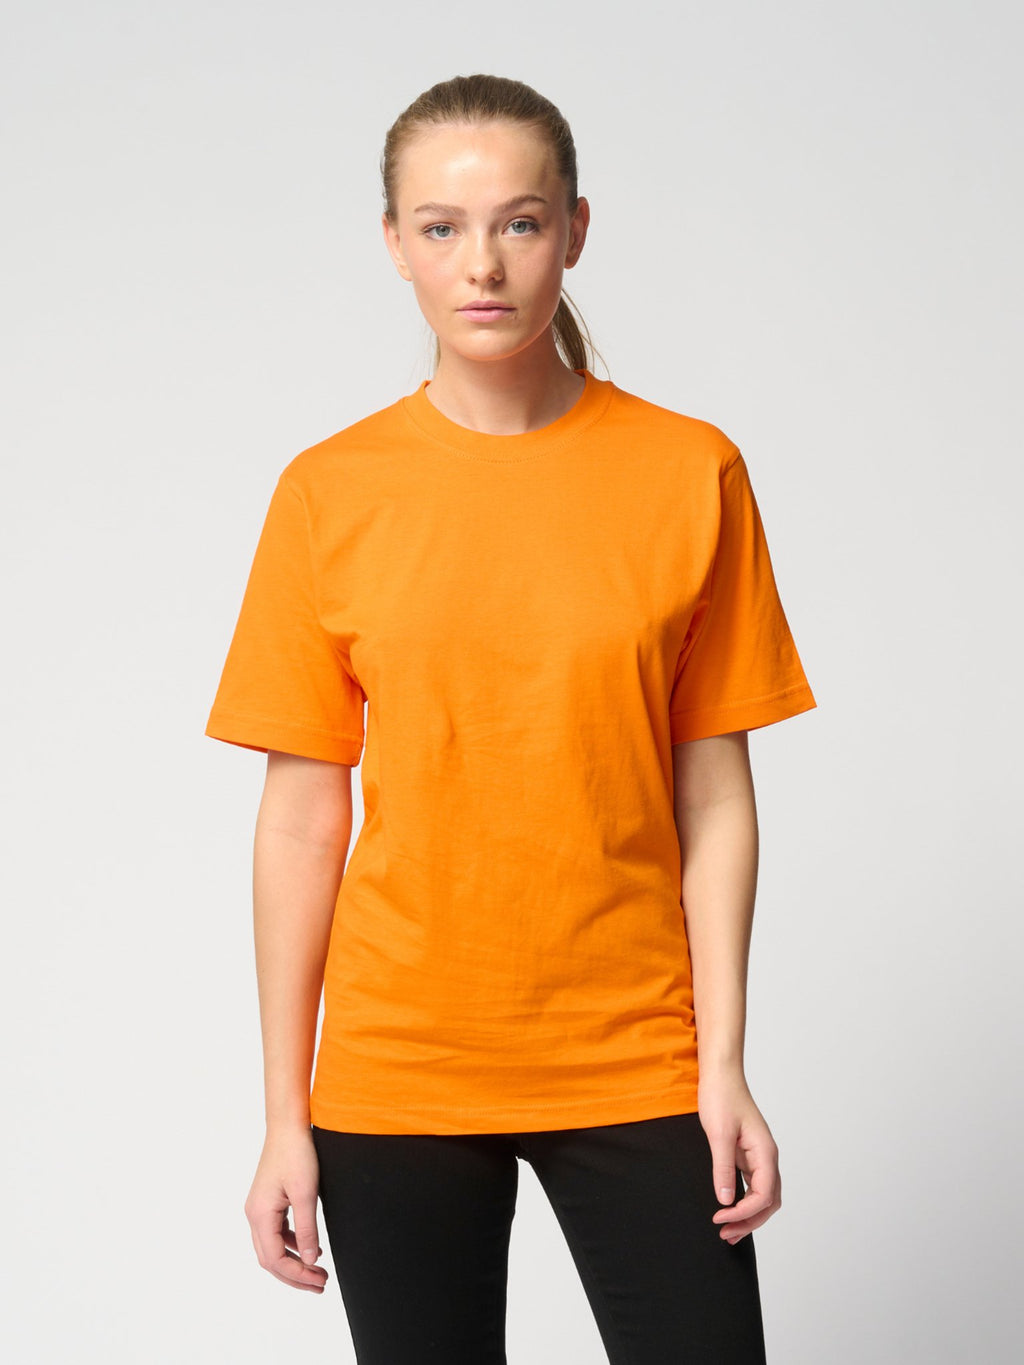 Camiseta de gran tamaño: paquete de mujeres (6 pcs).